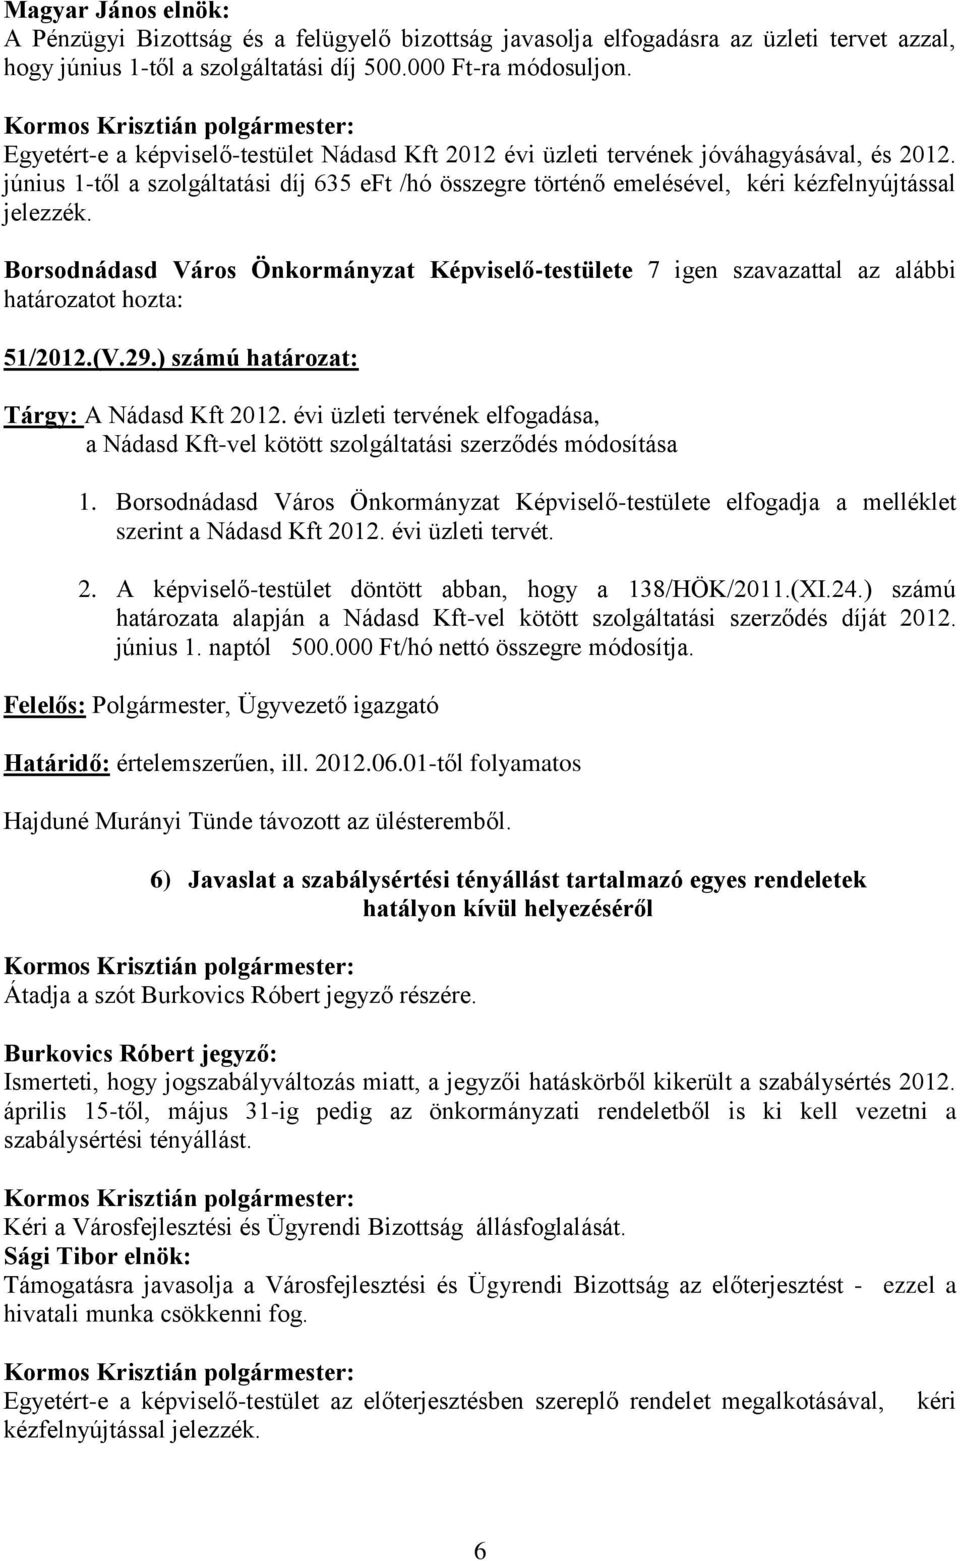 51/2012.(V.29.) számú határozat: Tárgy: A Nádasd Kft 2012. évi üzleti tervének elfogadása, a Nádasd Kft-vel kötött szolgáltatási szerződés módosítása 1.